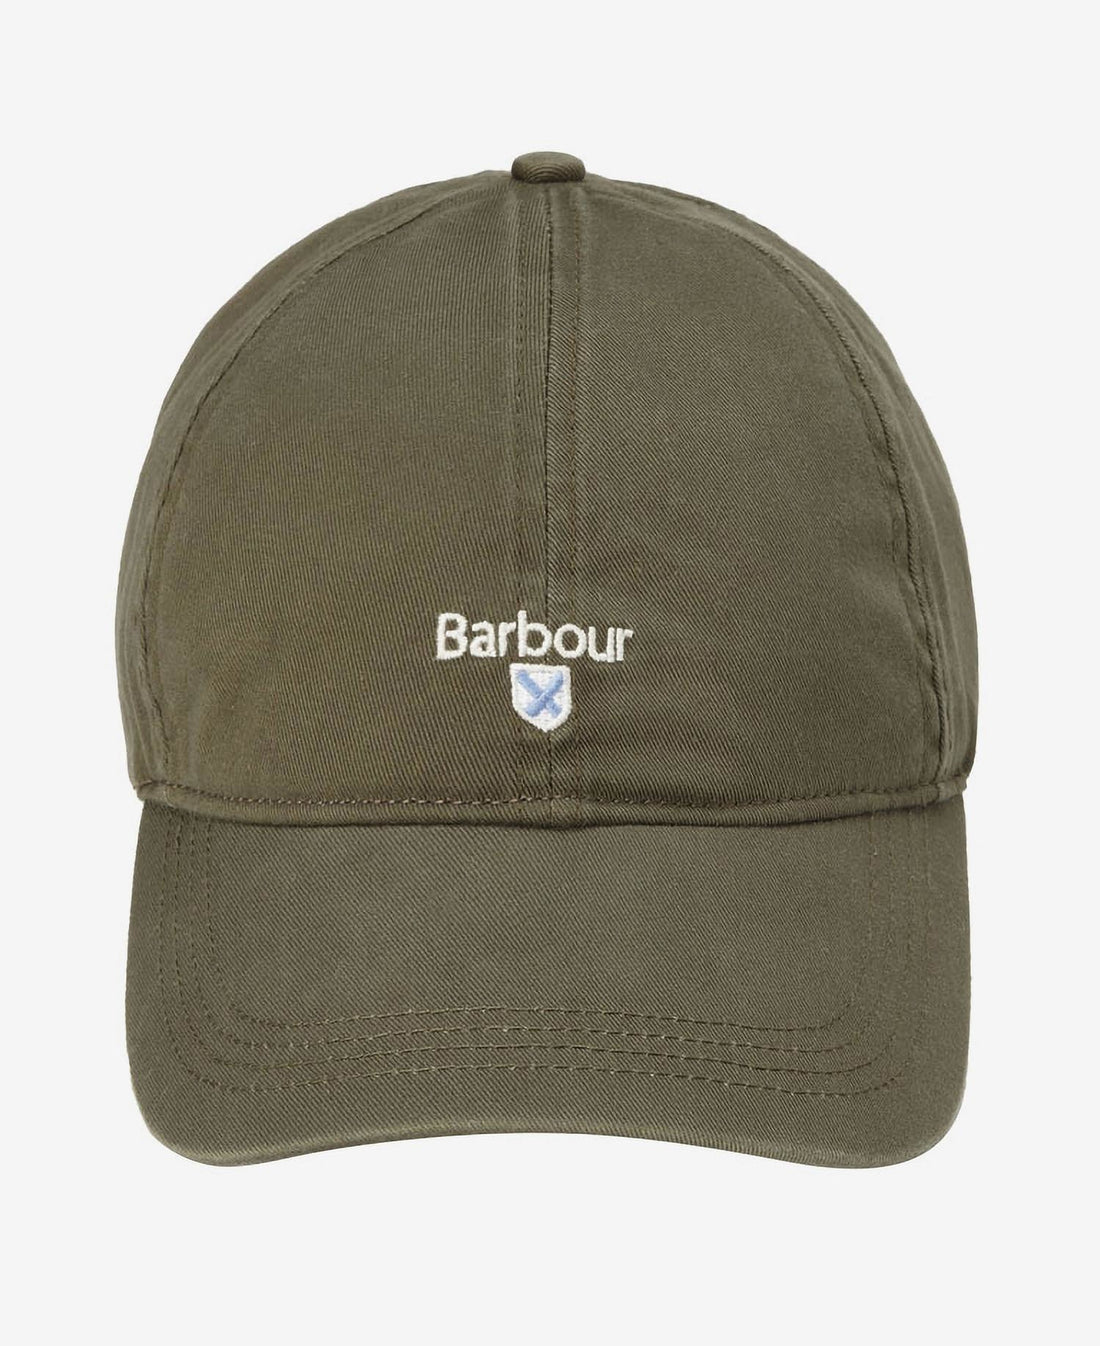 Barbour - Kasket, Cascade Sports - Olive